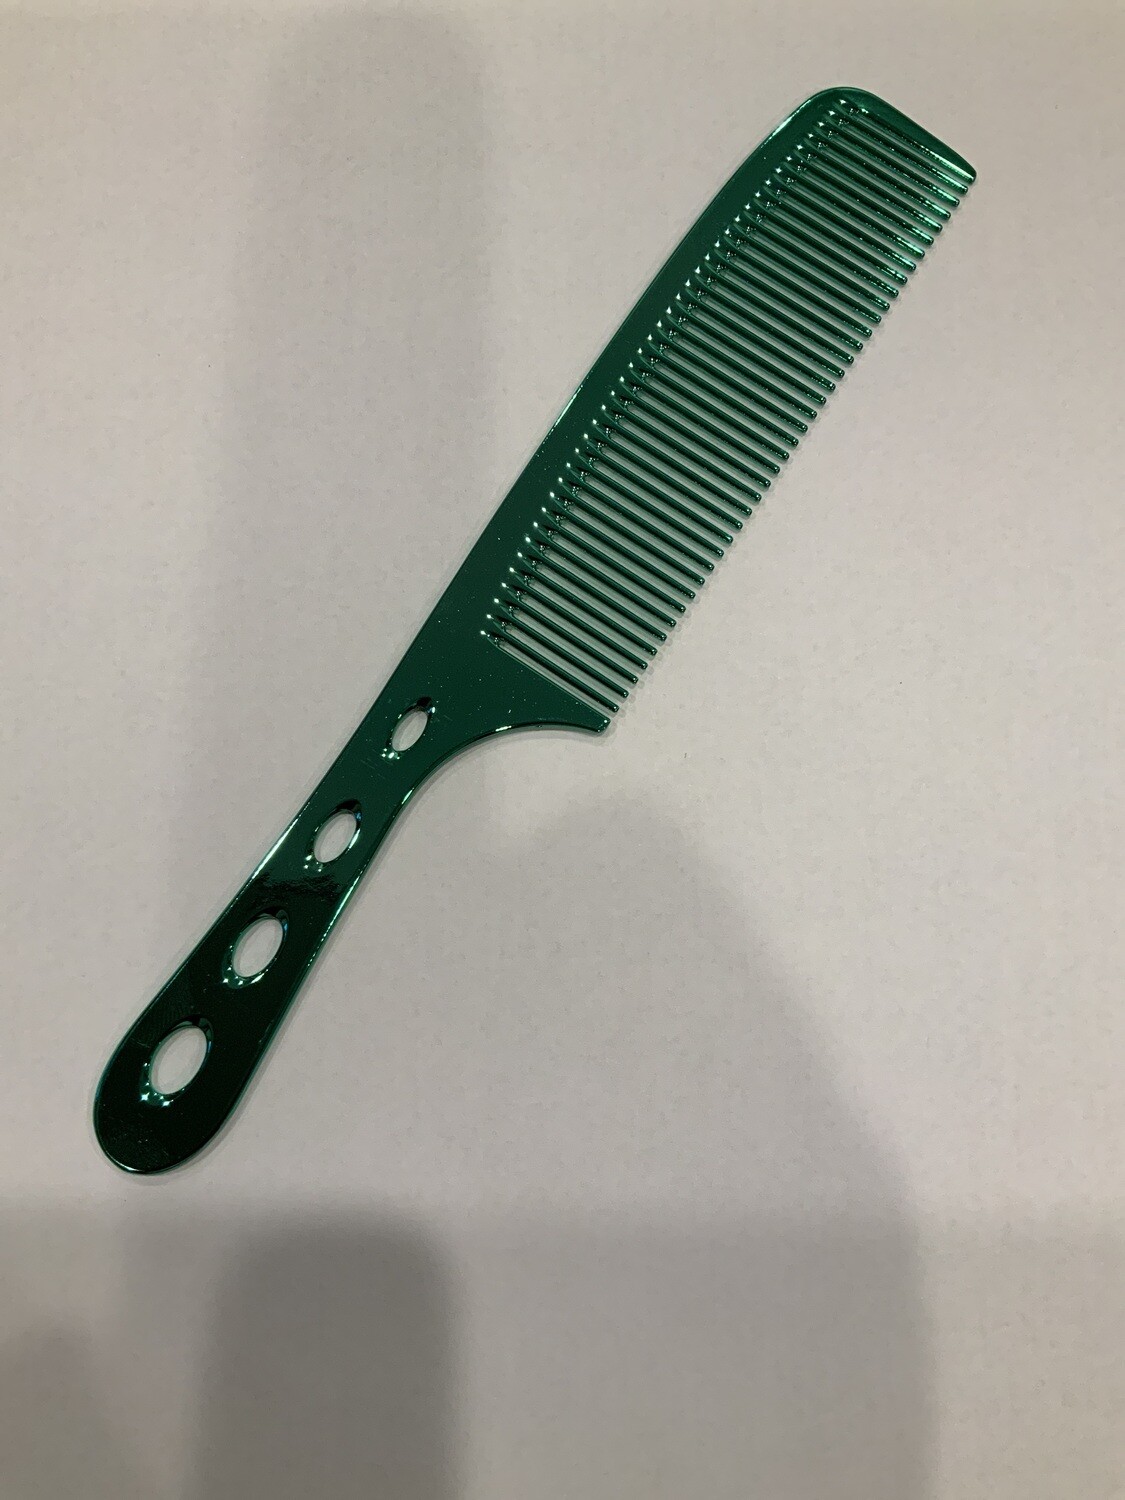 Dk steel comb green